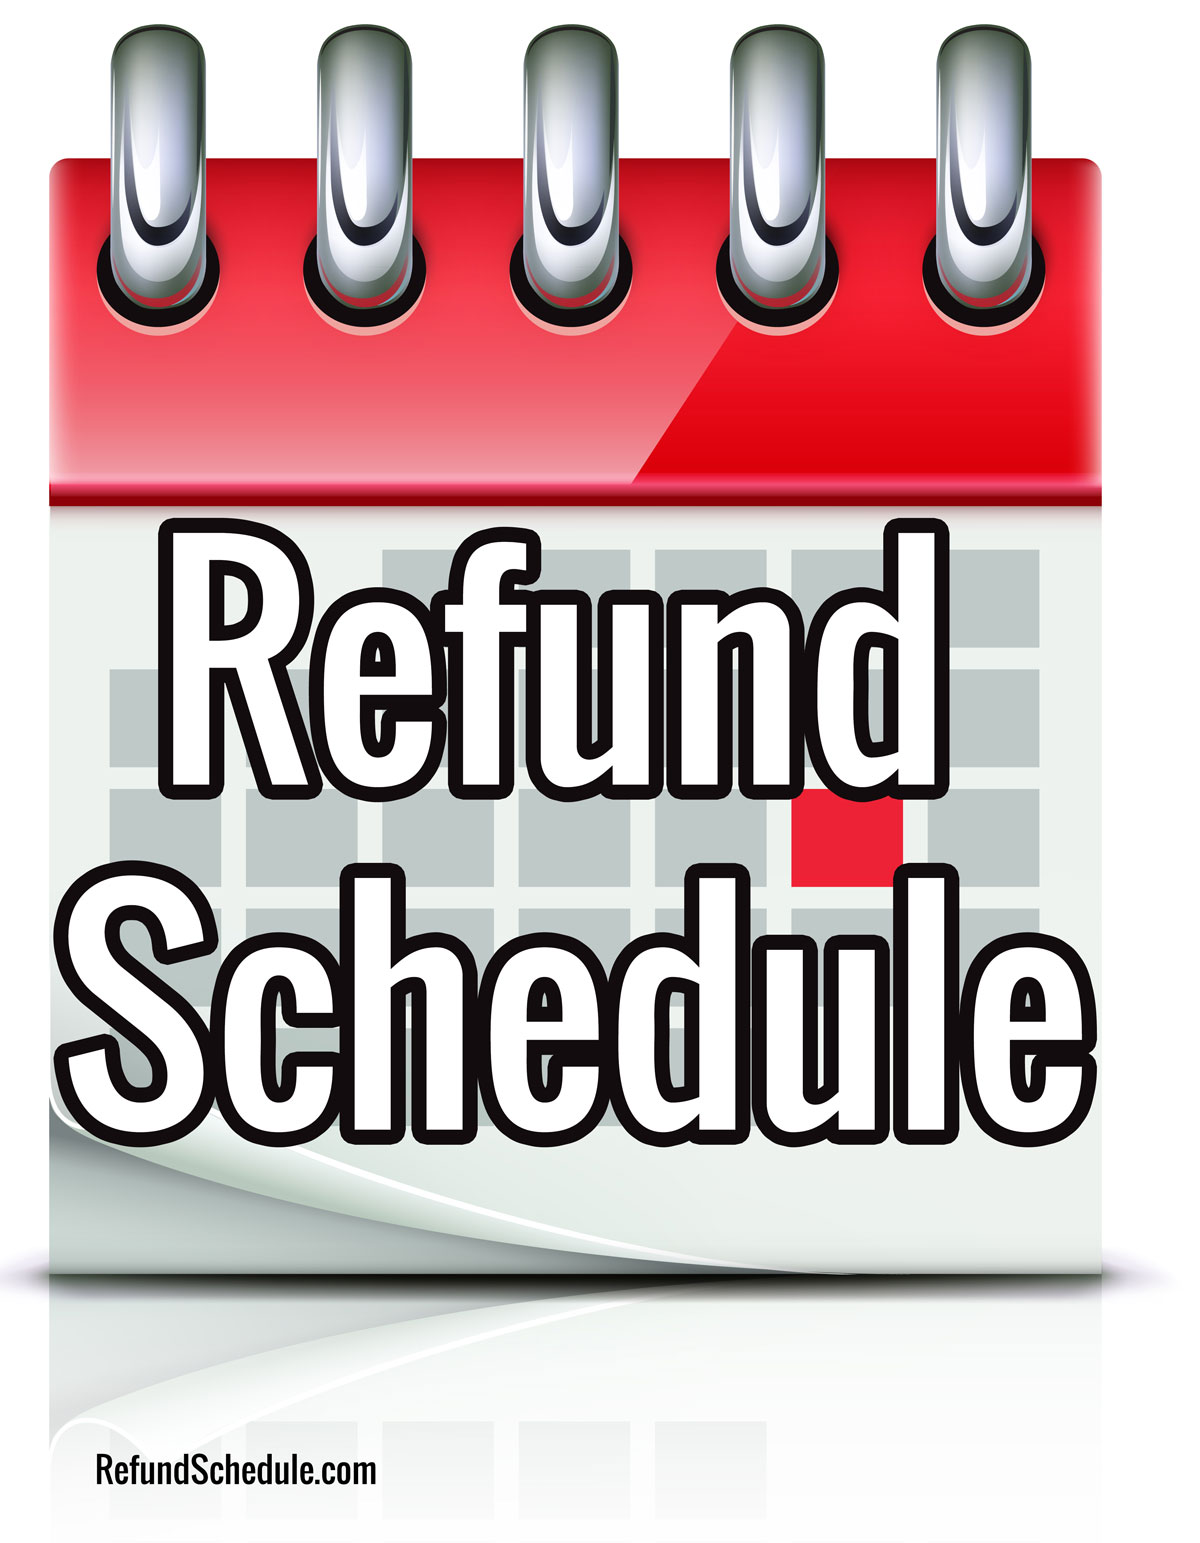 Refund schedule 2021 tax The IRS